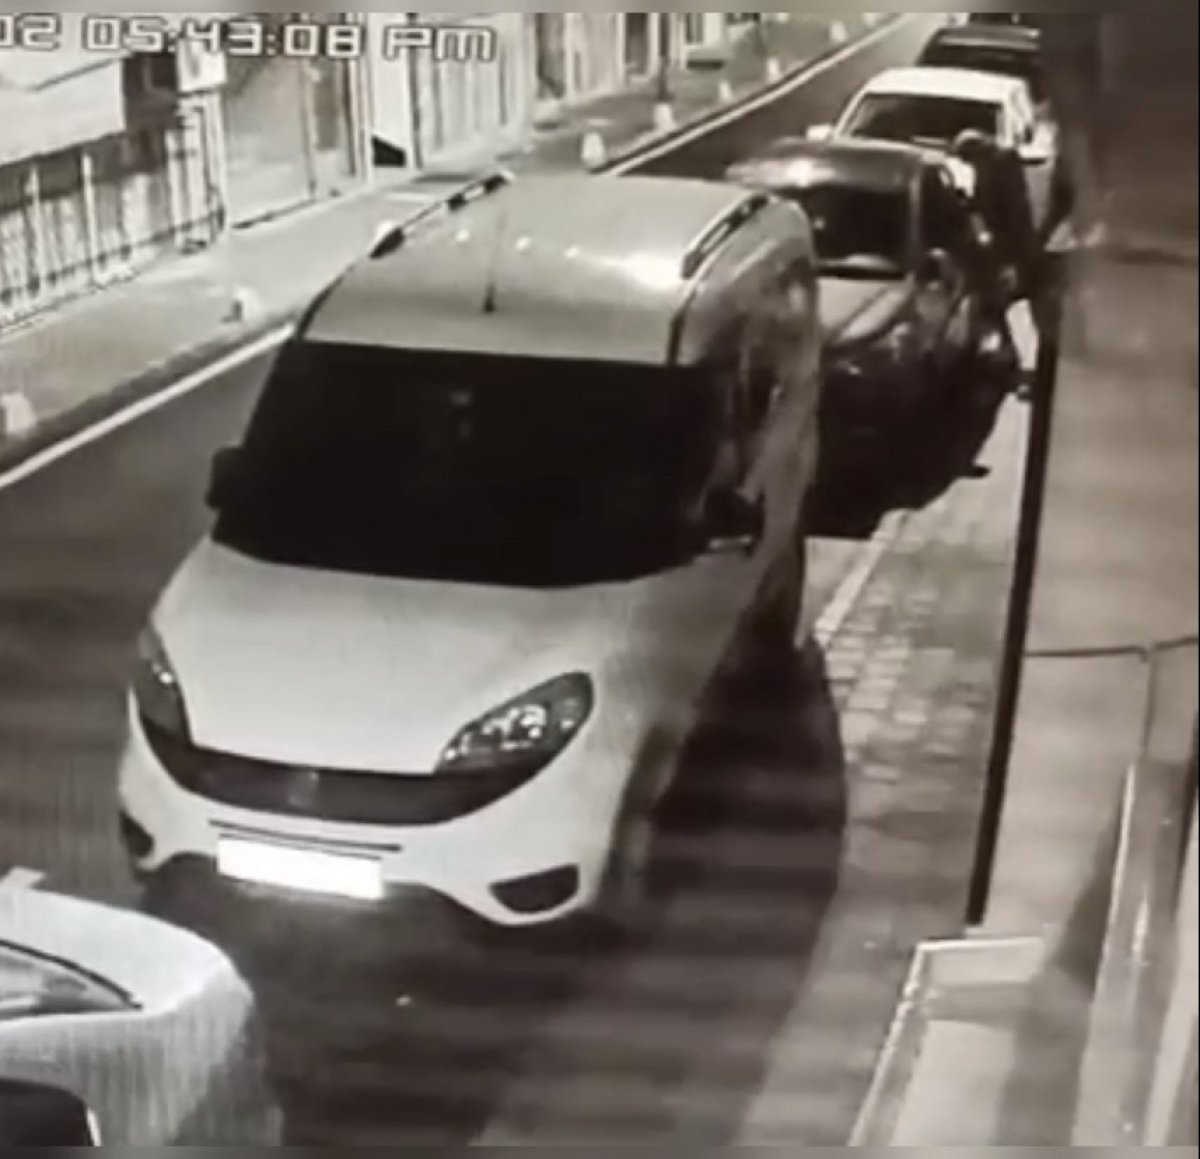 İstanbul’da 19 araç soyan hırsız yakalandı #4